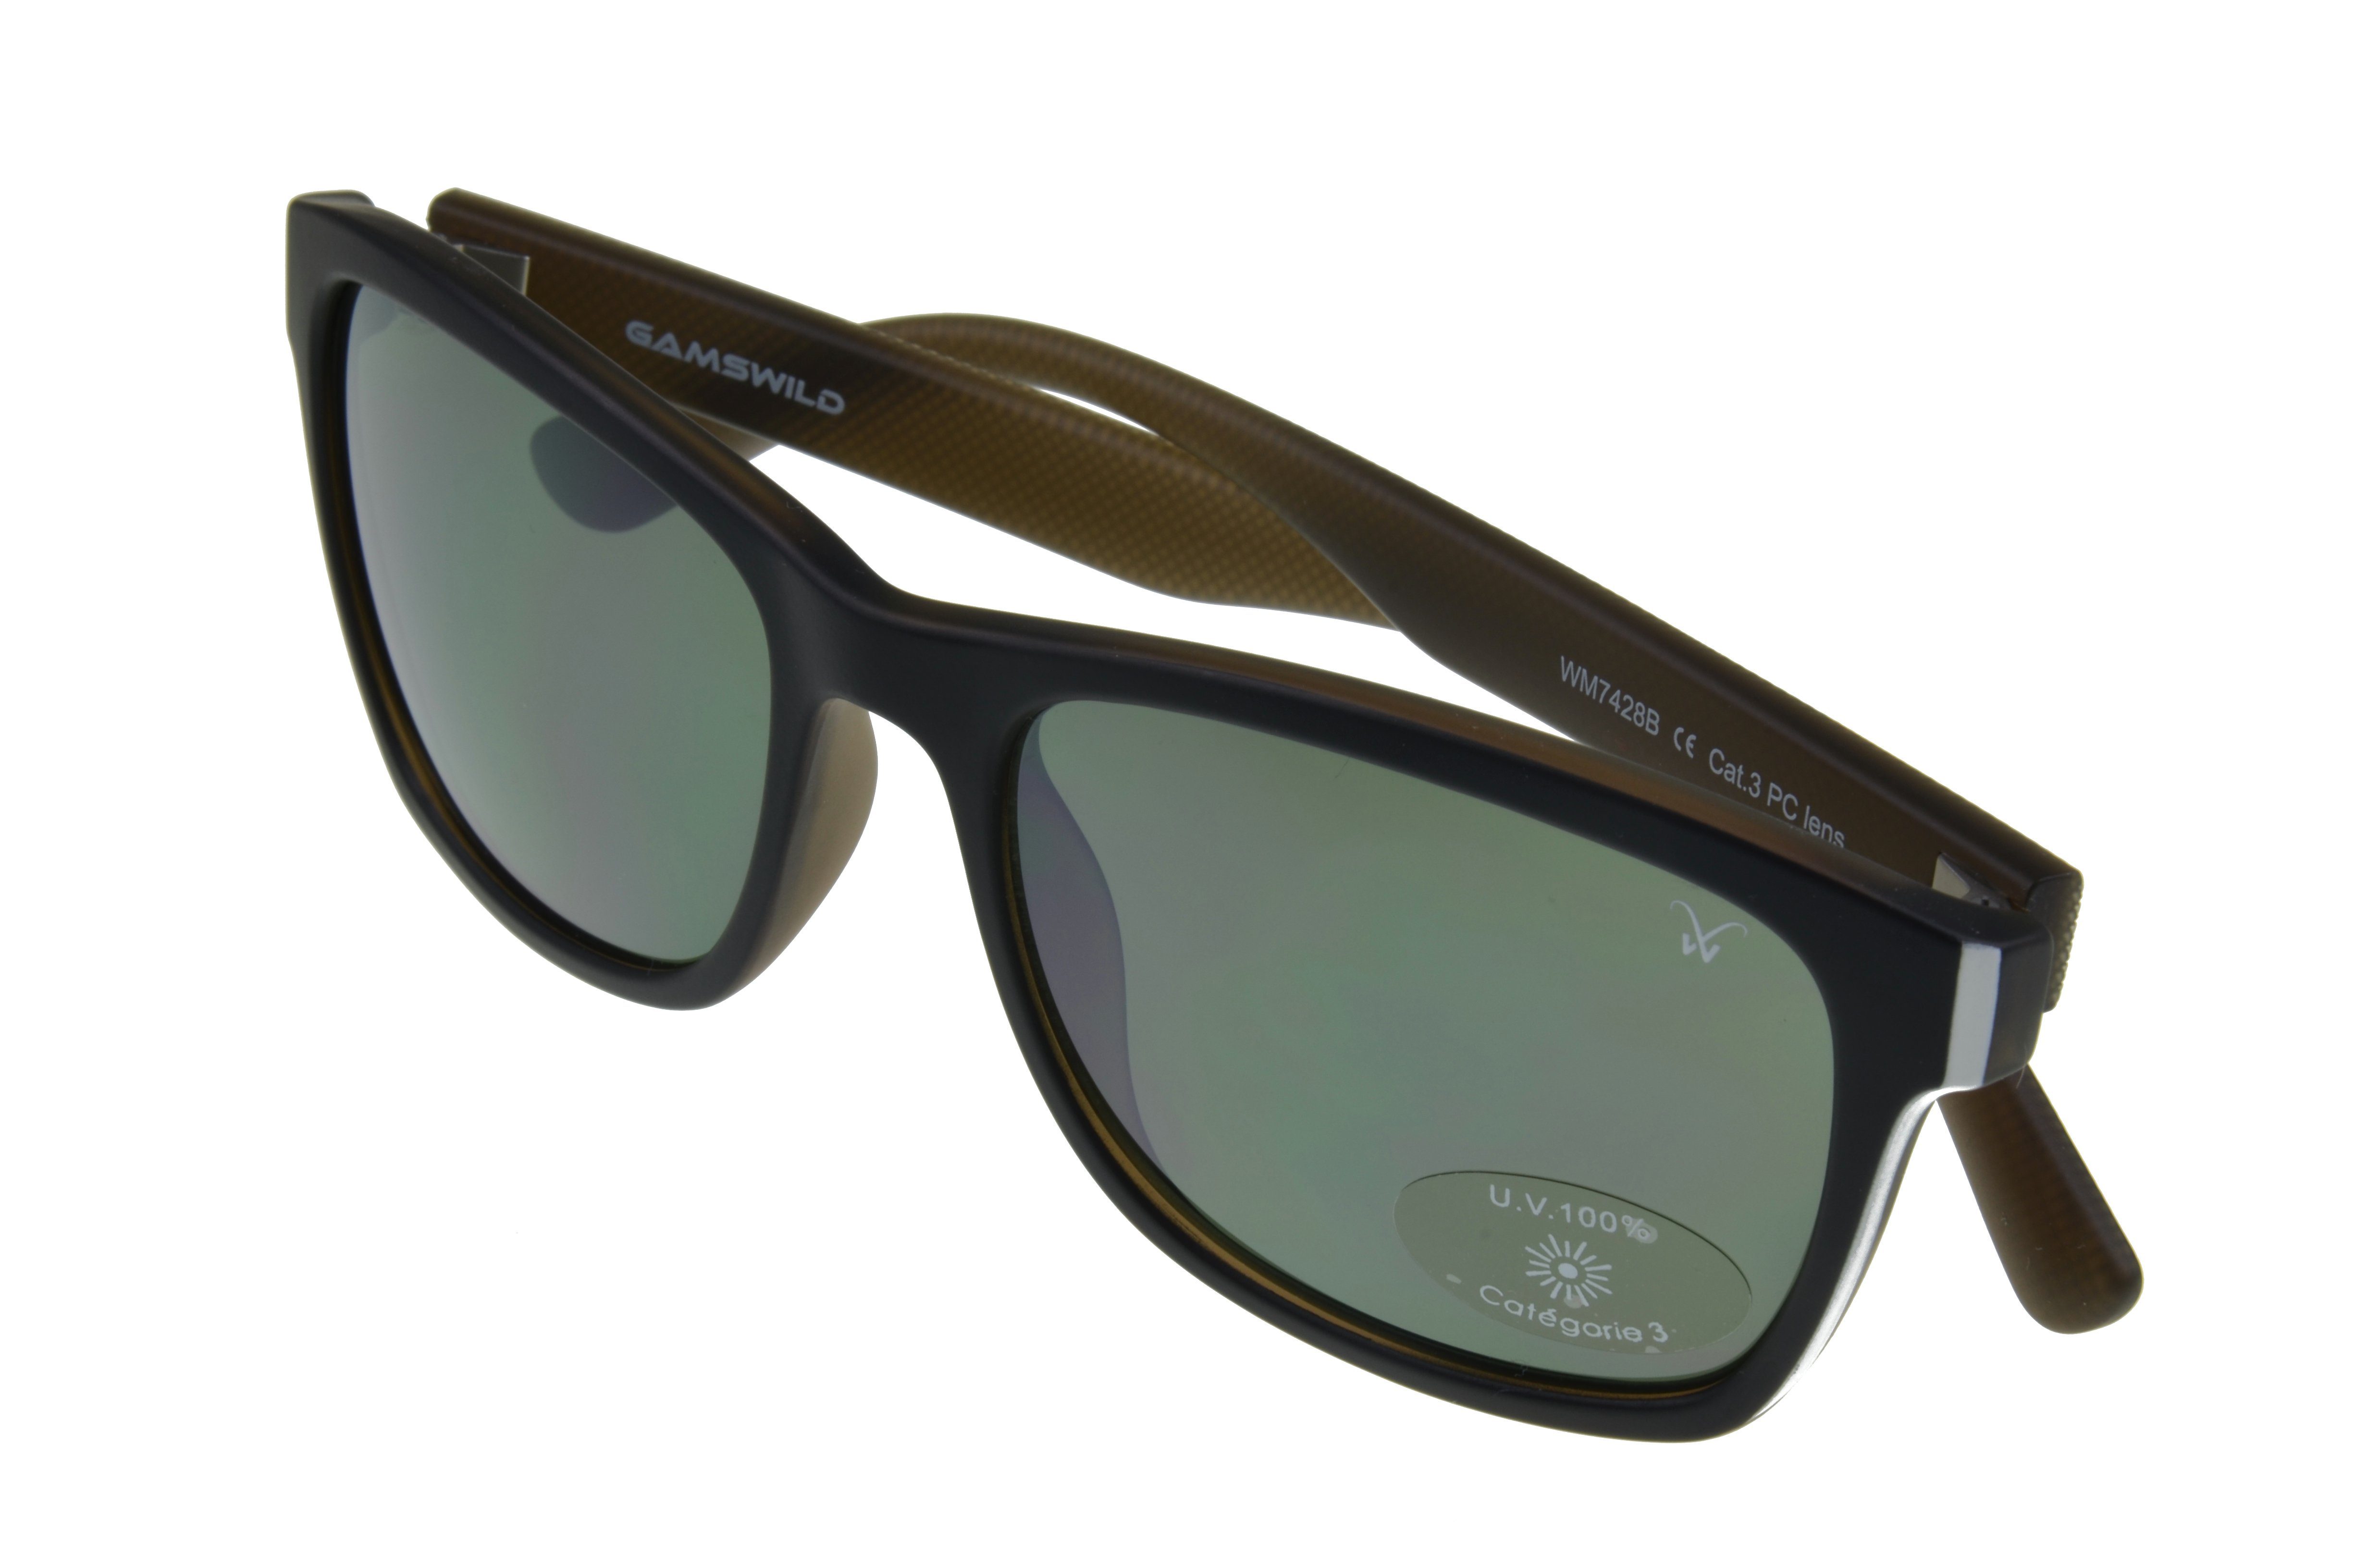 Mode schwarz-G15 G15 Sonnenbrille blau, WM7428 schwarz Damen, GAMSSTYLE Gamswild Brille beige,